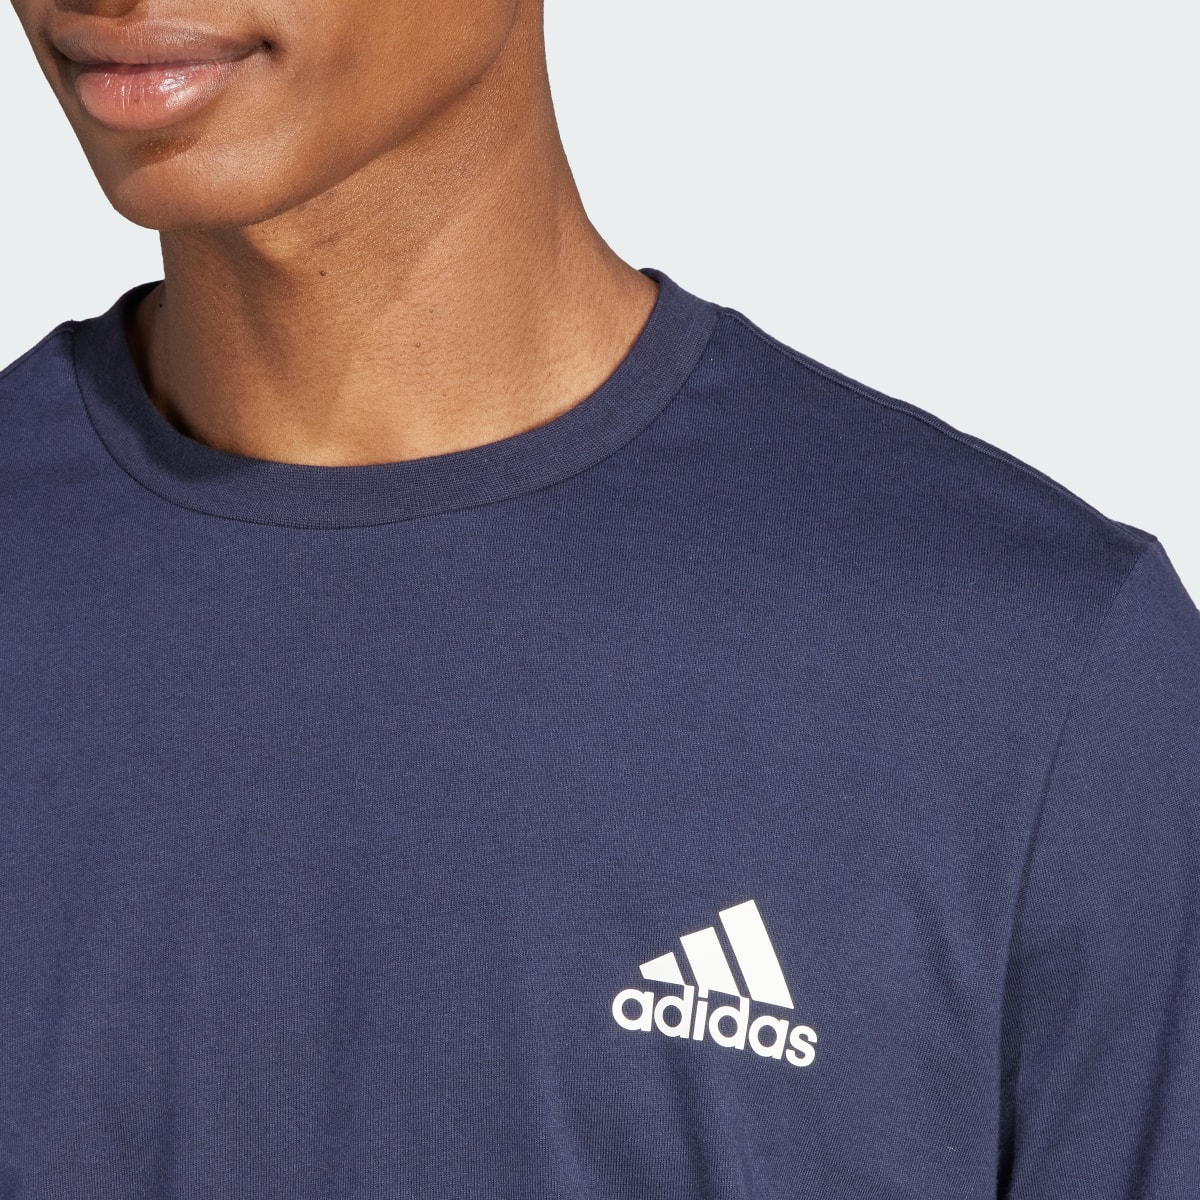 Adidas T-shirt Tiro Wordmark Graphic. 7